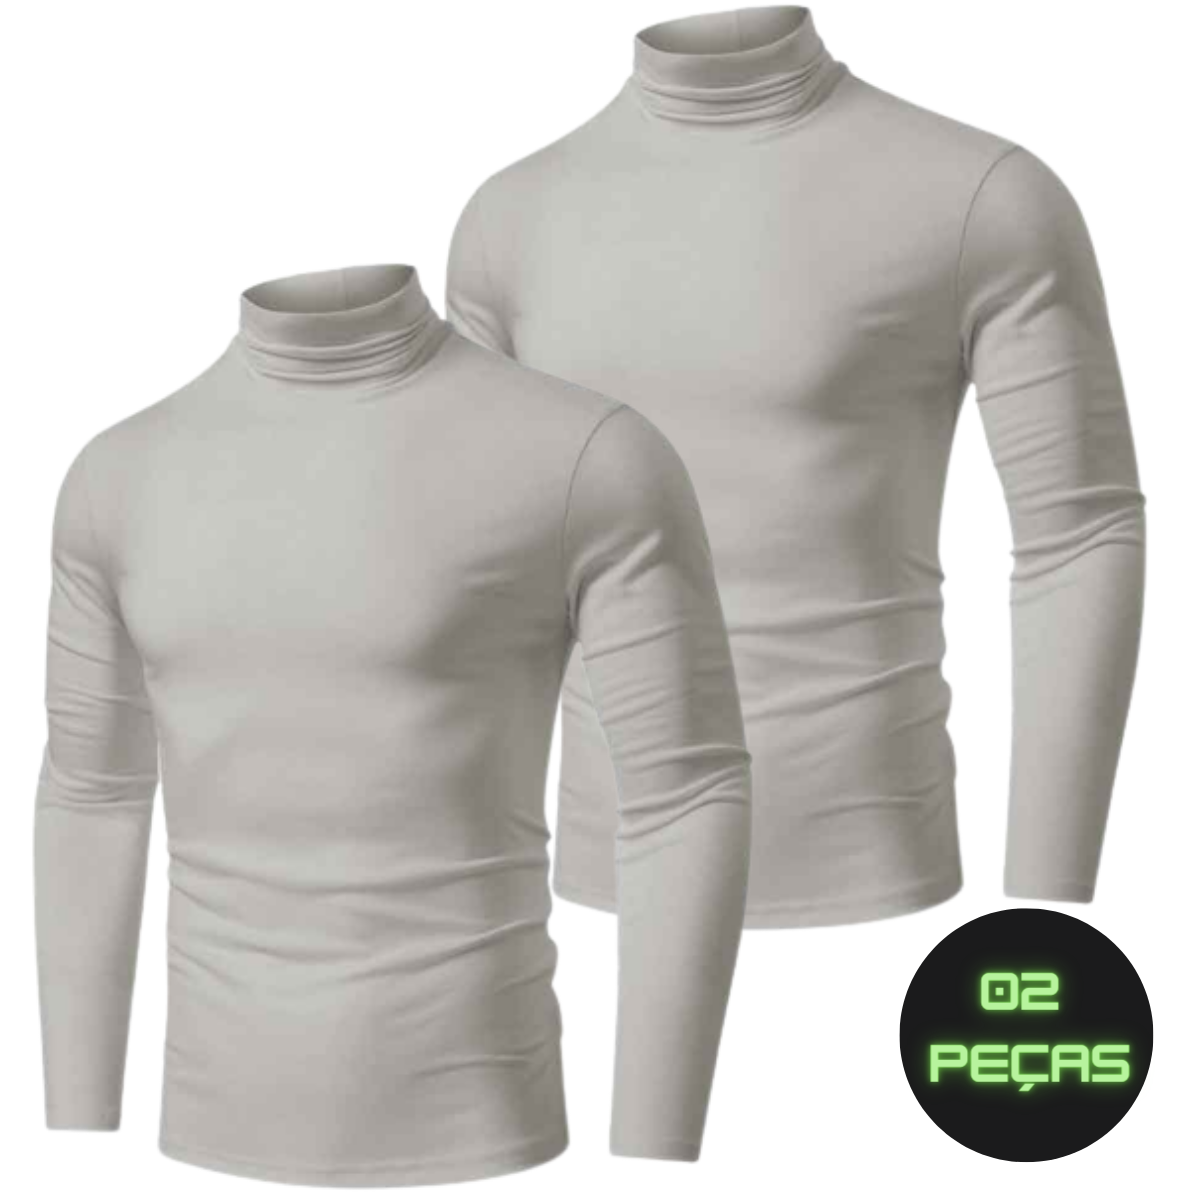 Kit 2 camisas térmicas gola alta com proteção UV